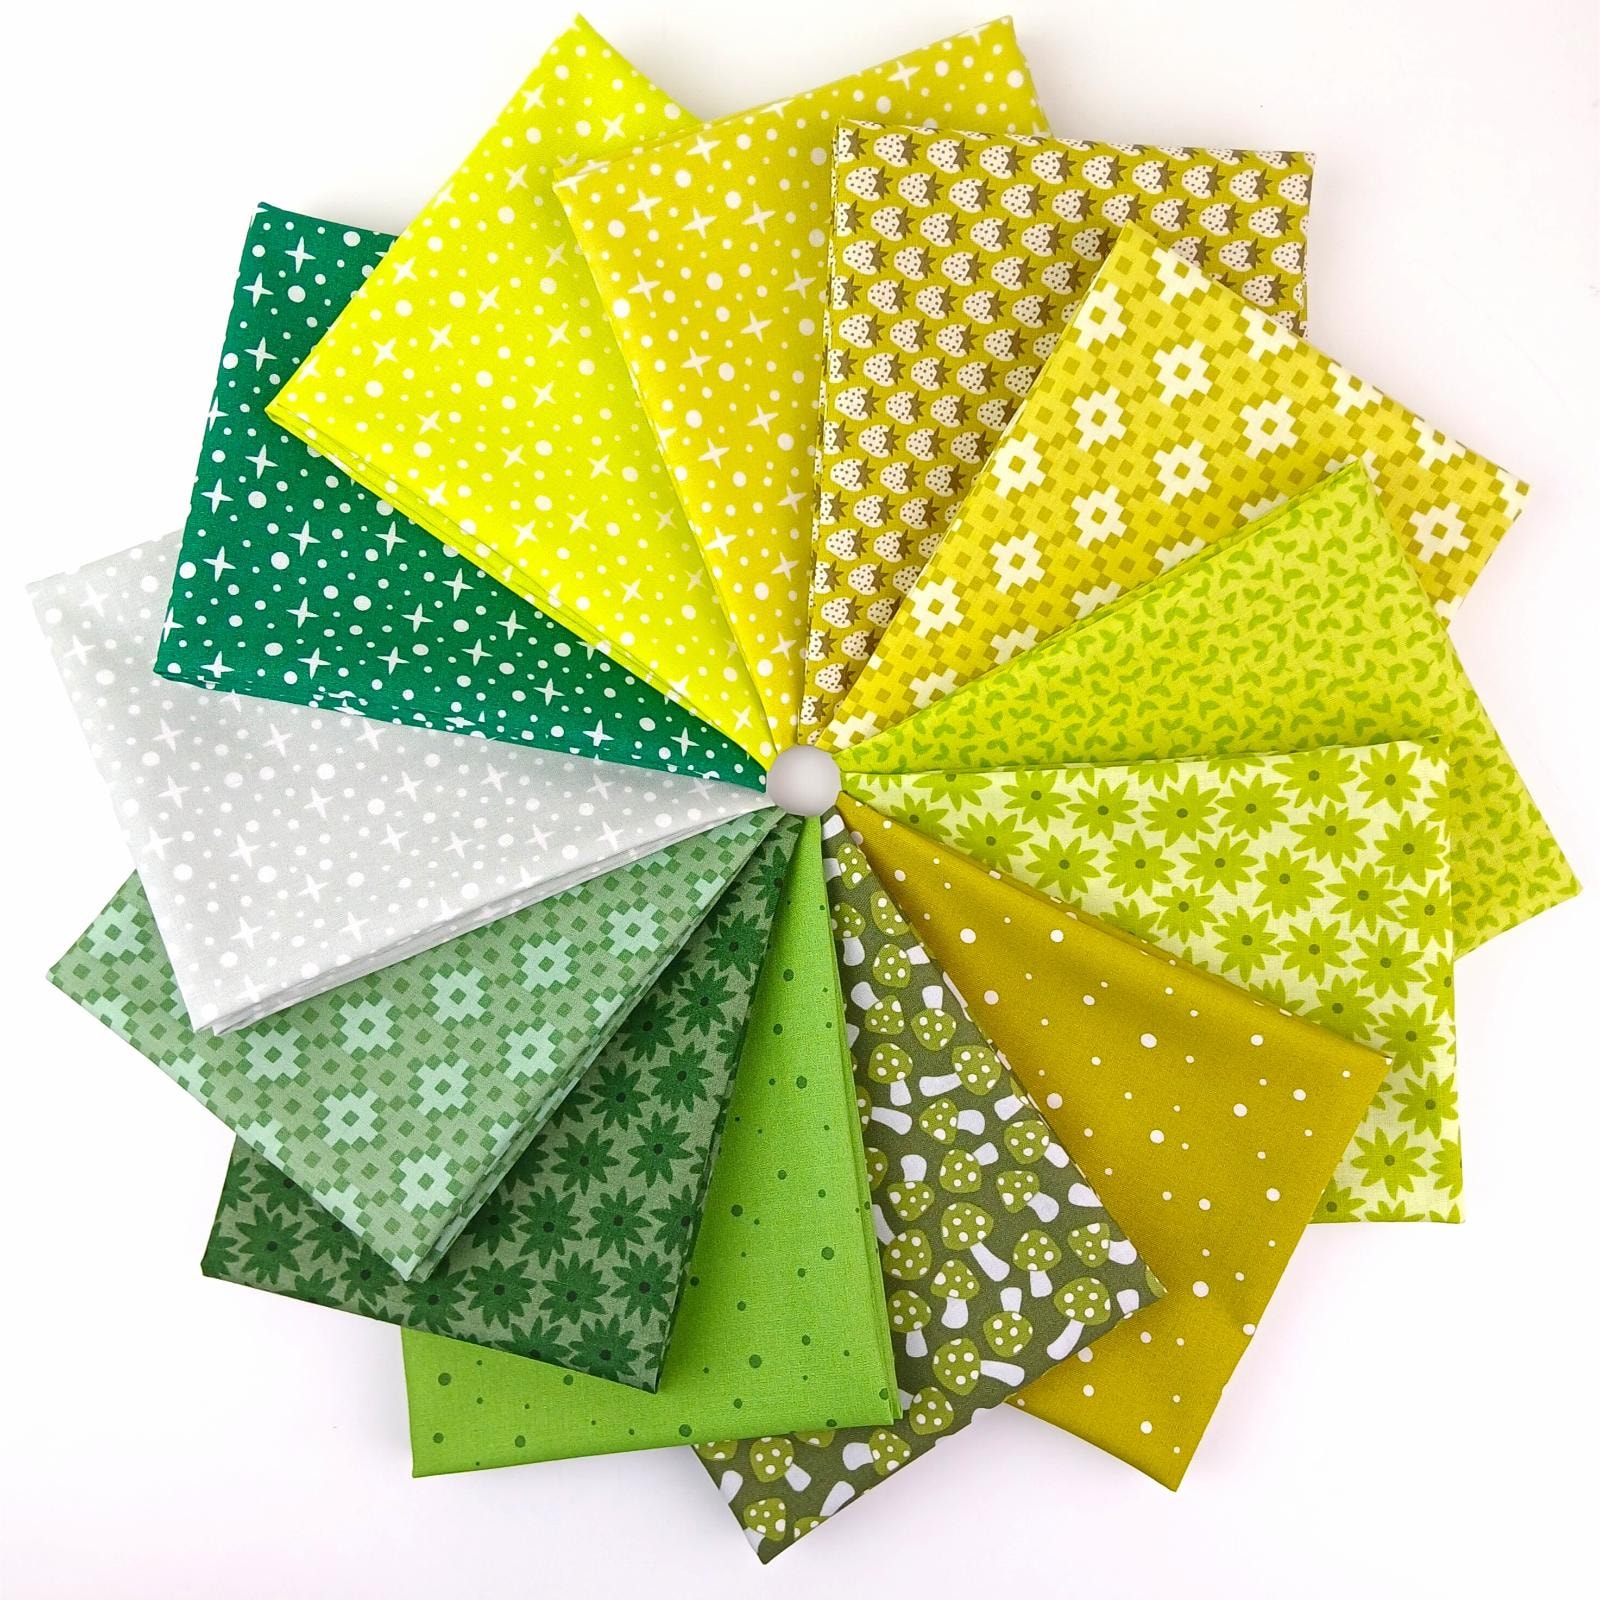 Paintbox Basics Fat Quarter Bundle | Elizabeth Hartman - Green/Lime - 13 FQs